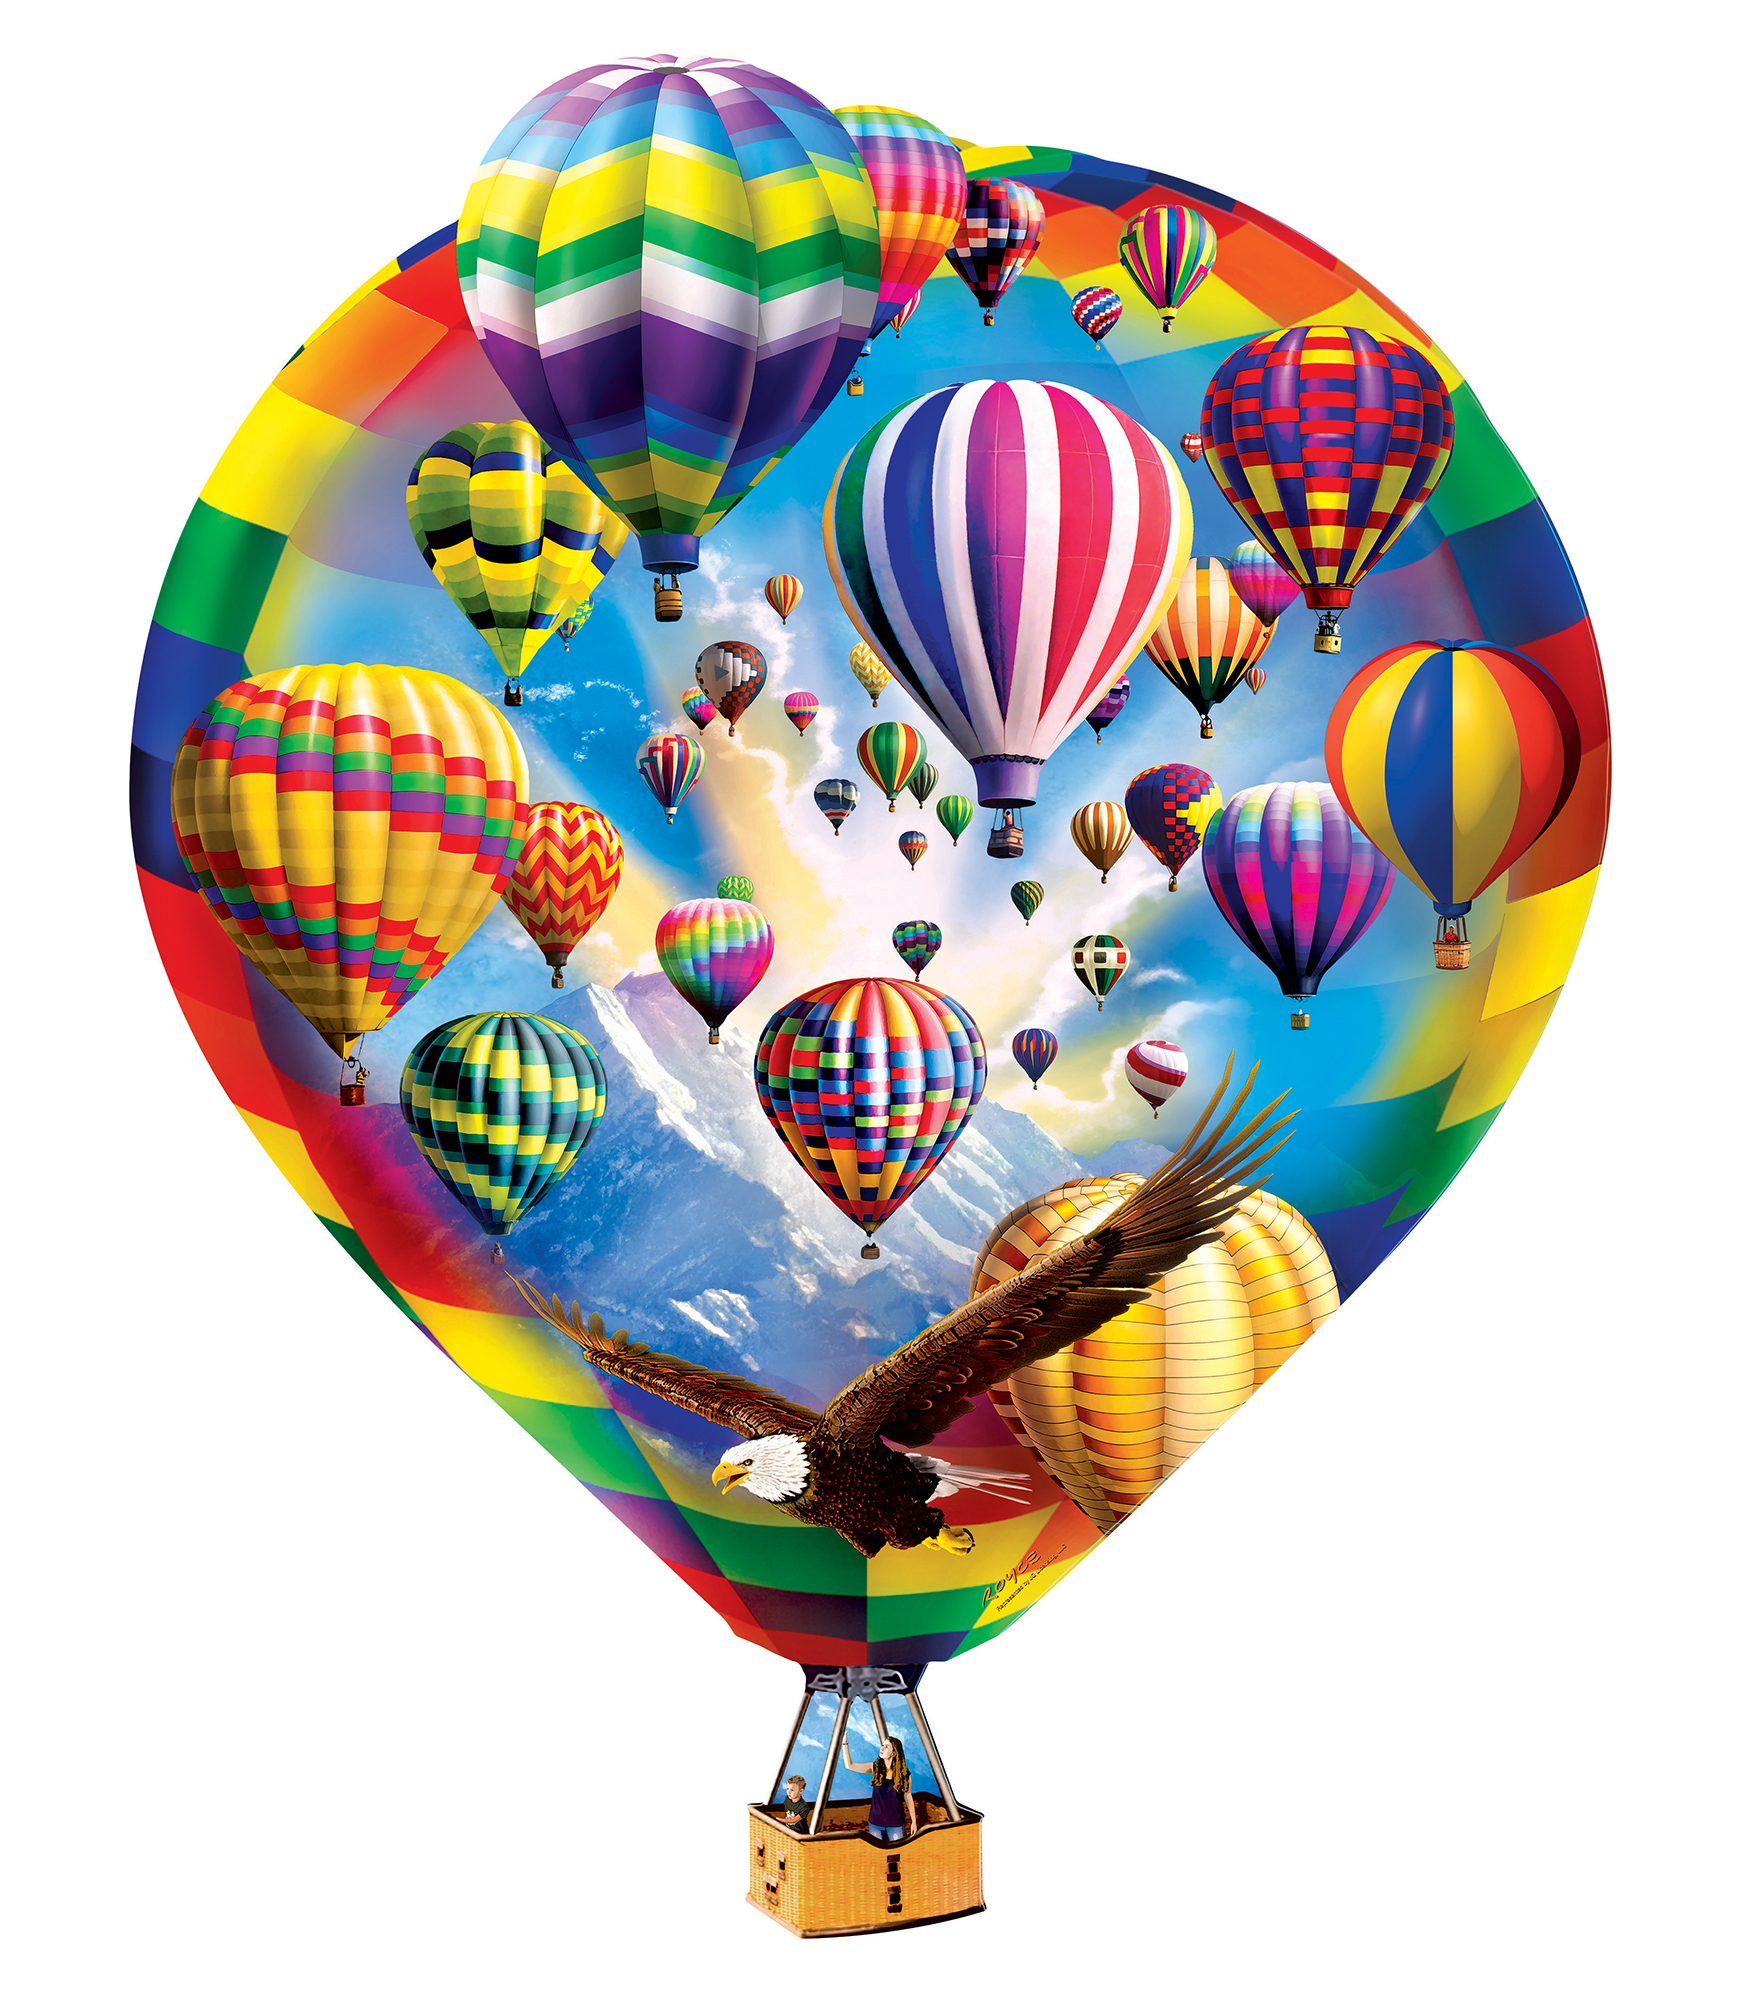 Hot Air Balloons Hot Air Balloon Shaped Puzzle